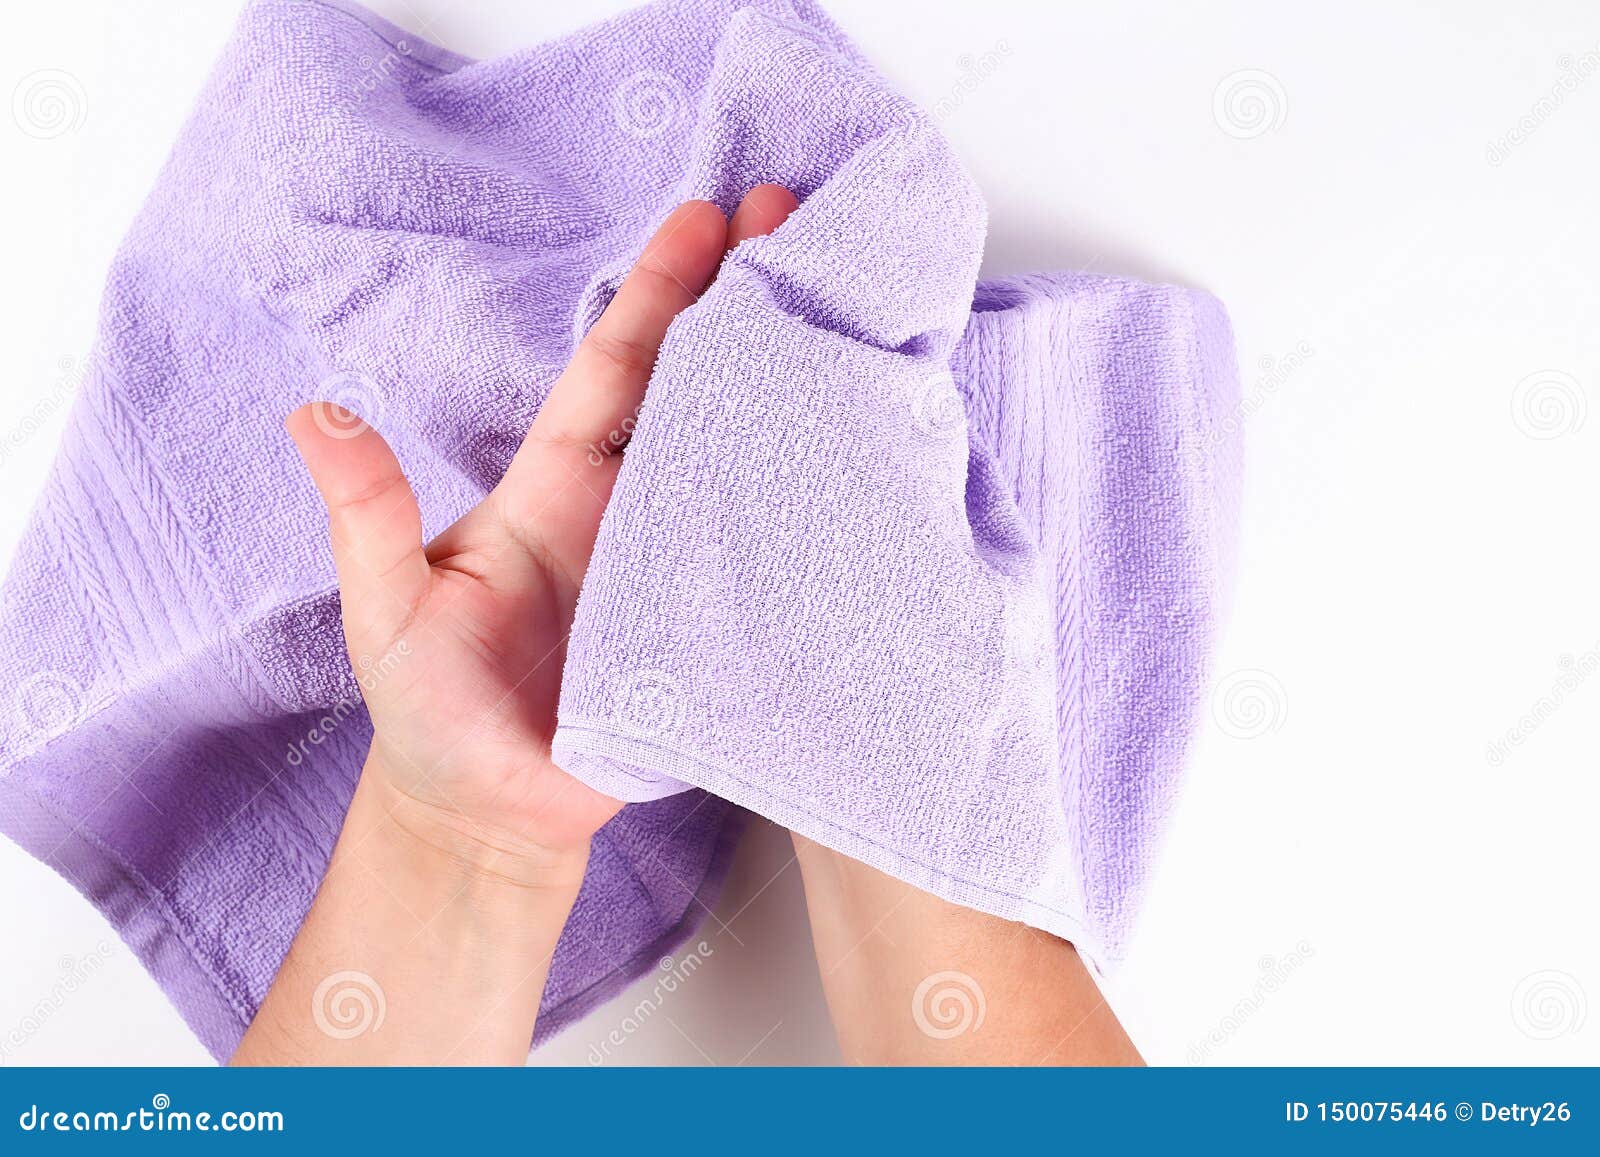 Чужим полотенцем. Вытирание рук полотенцем. Полотенце для рук. Полотенце для вытерание рук. Сухие полотенца для рук.